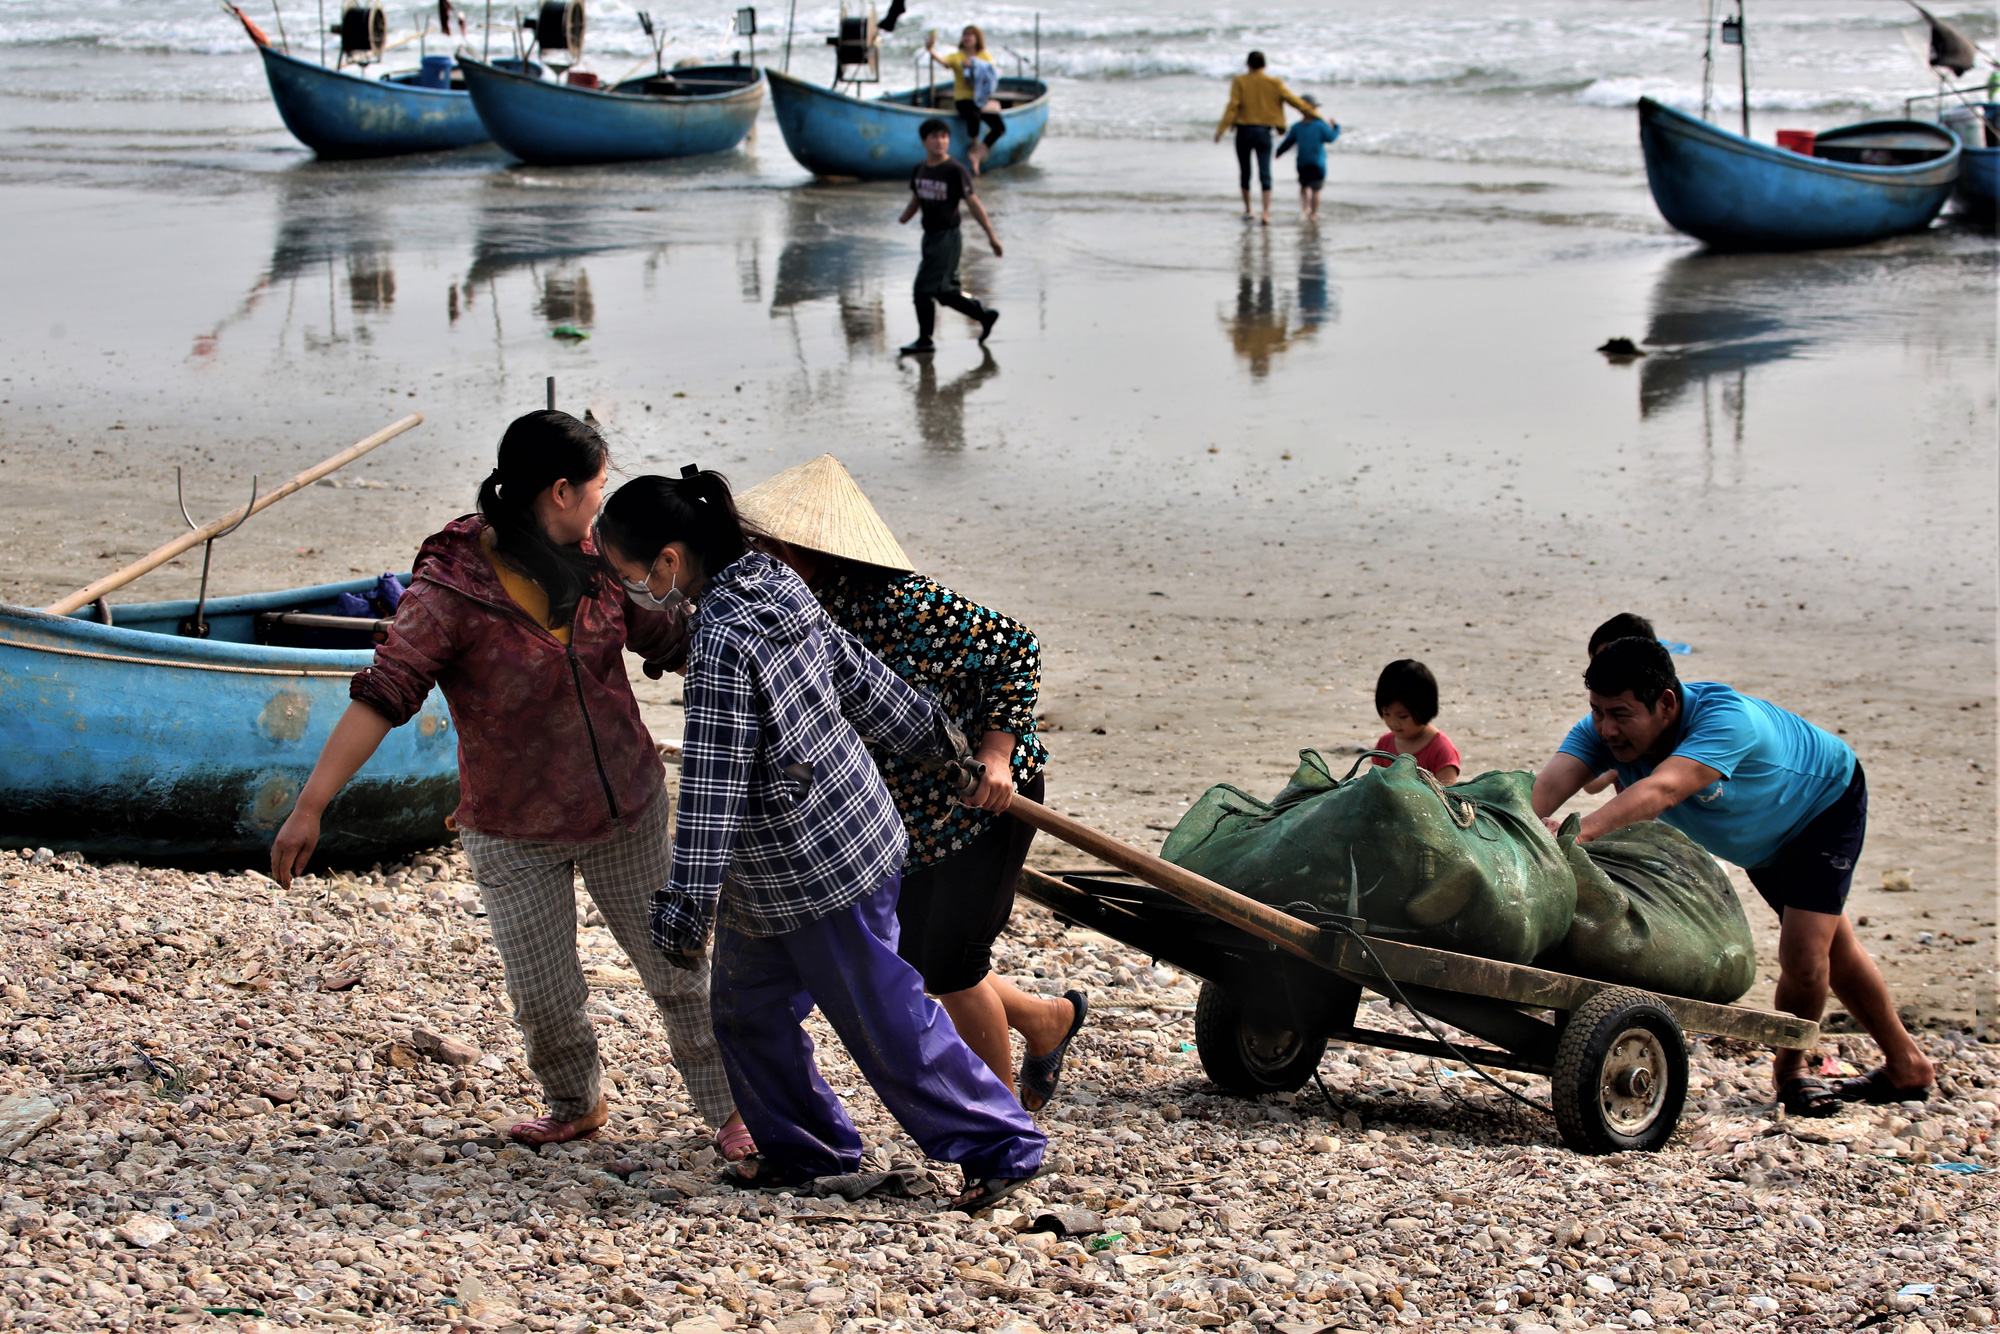 Ra khơi vài ba tiếng, ngư dân Quỳnh Nghĩa đem về cá, tôm cua, mực,... đầy ắp ằm ặp các thuyền thu cả triệu đồng - Ảnh 5.